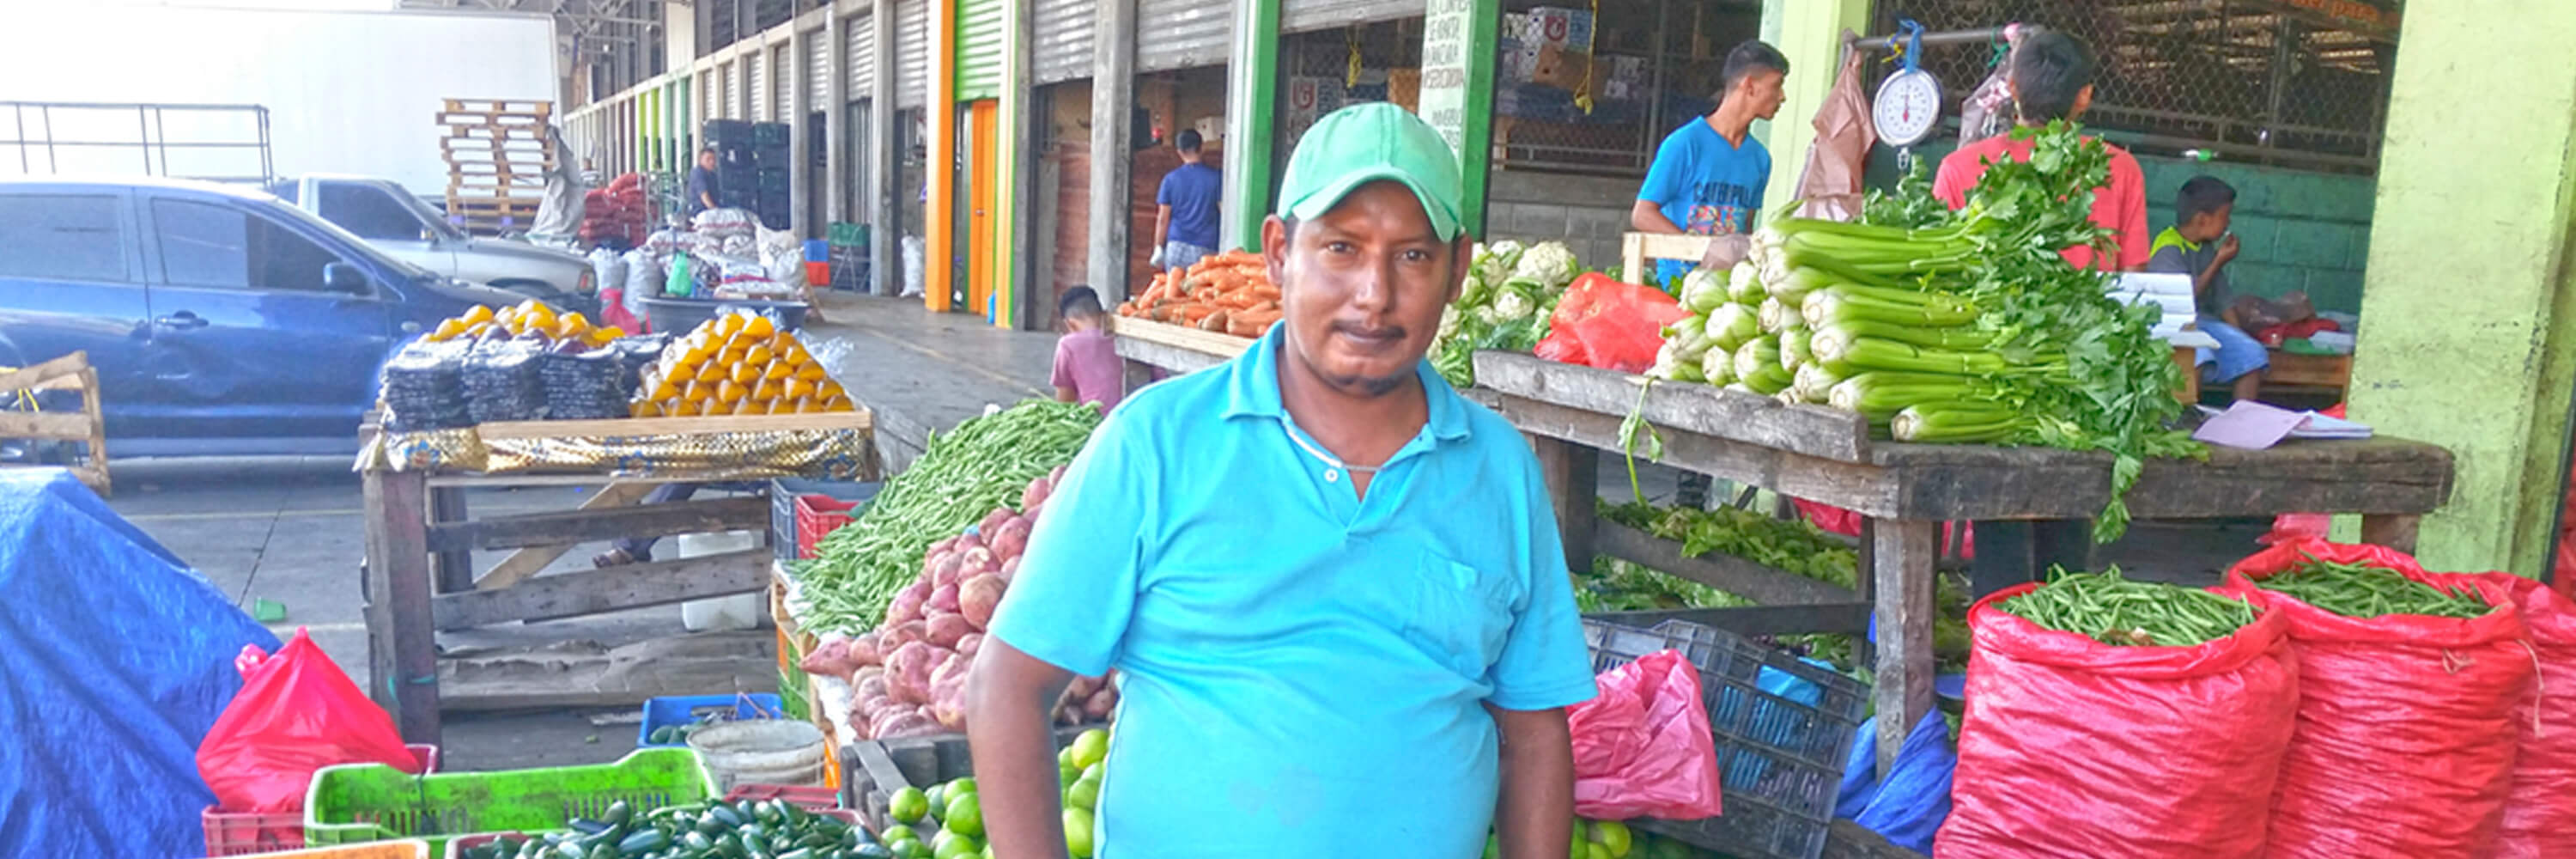 Mercado Central de Abastos, San Pedro Sula, Honduras